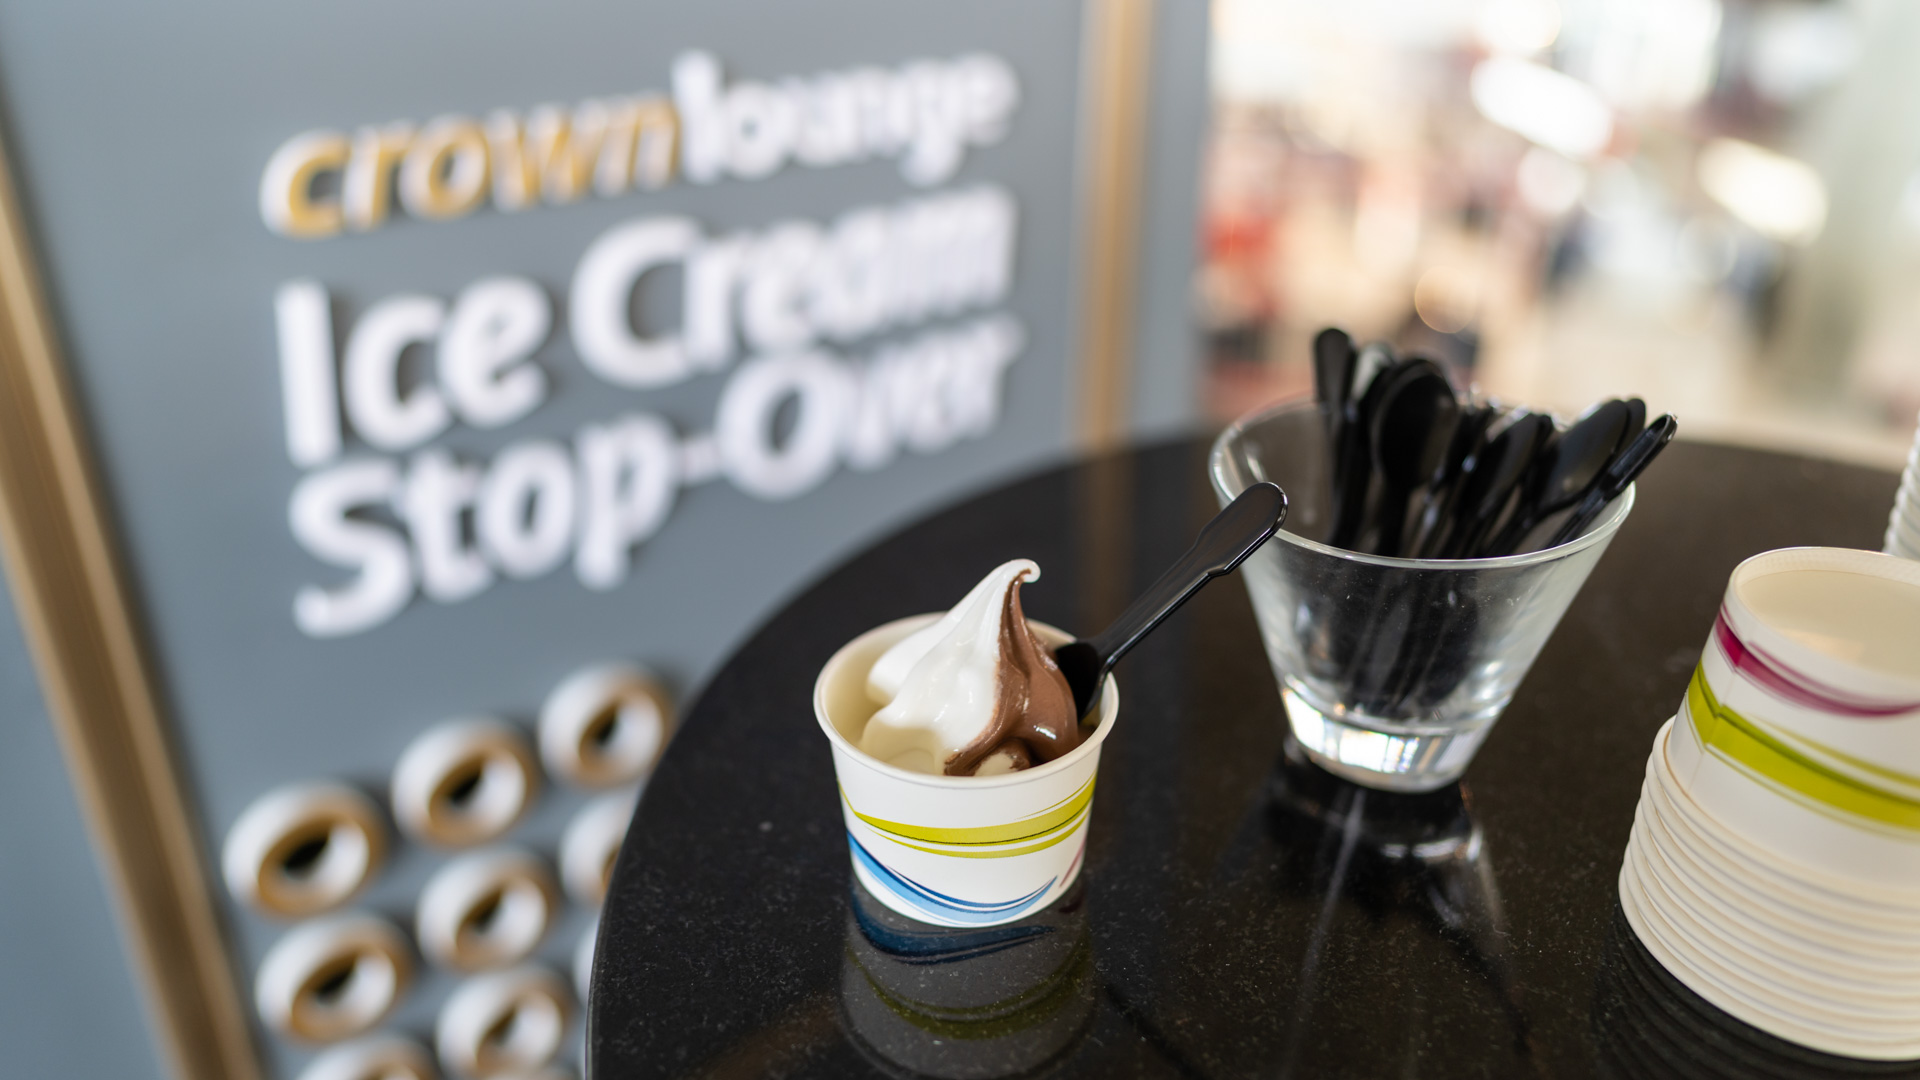 Royal Jordanian Crown Lounge ice cream